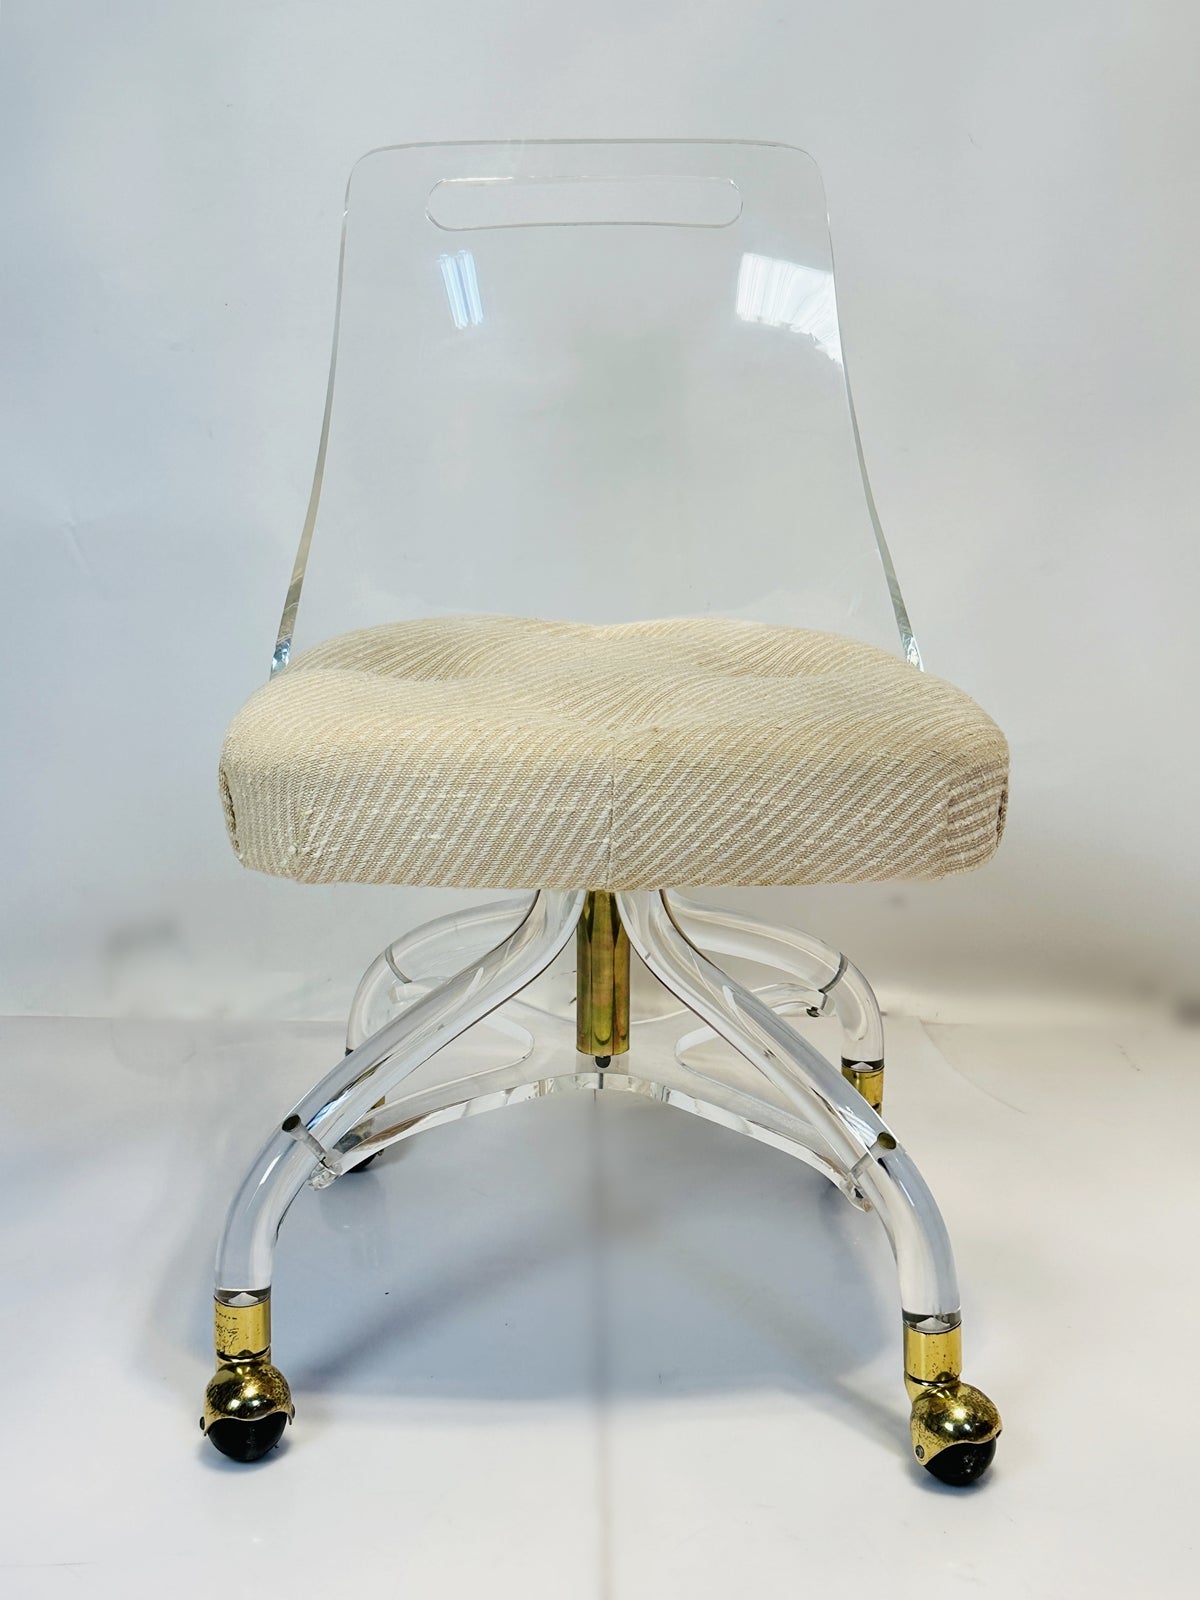 Voici l'exquise chaise-lavabo en lucite et laiton de Hill Manufacturing, une pièce intemporelle de l'époque emblématique des années 1960 aux États-Unis.

Fabriquée avec une élégance inégalée, cette chaise allie sans effort la transparence de la